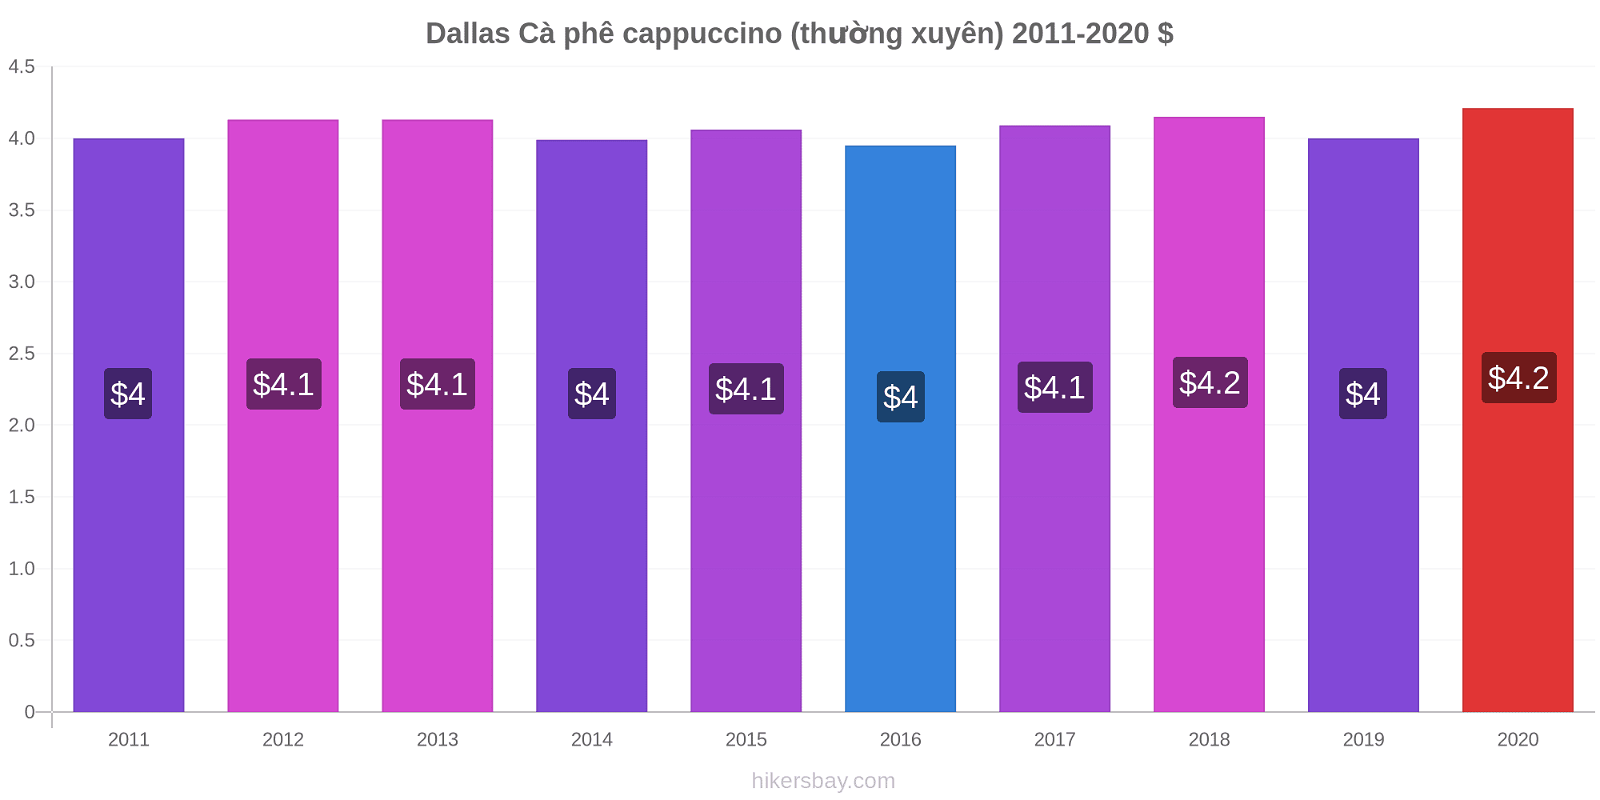 Dallas thay đổi giá Cà phê cappuccino (thường xuyên) hikersbay.com